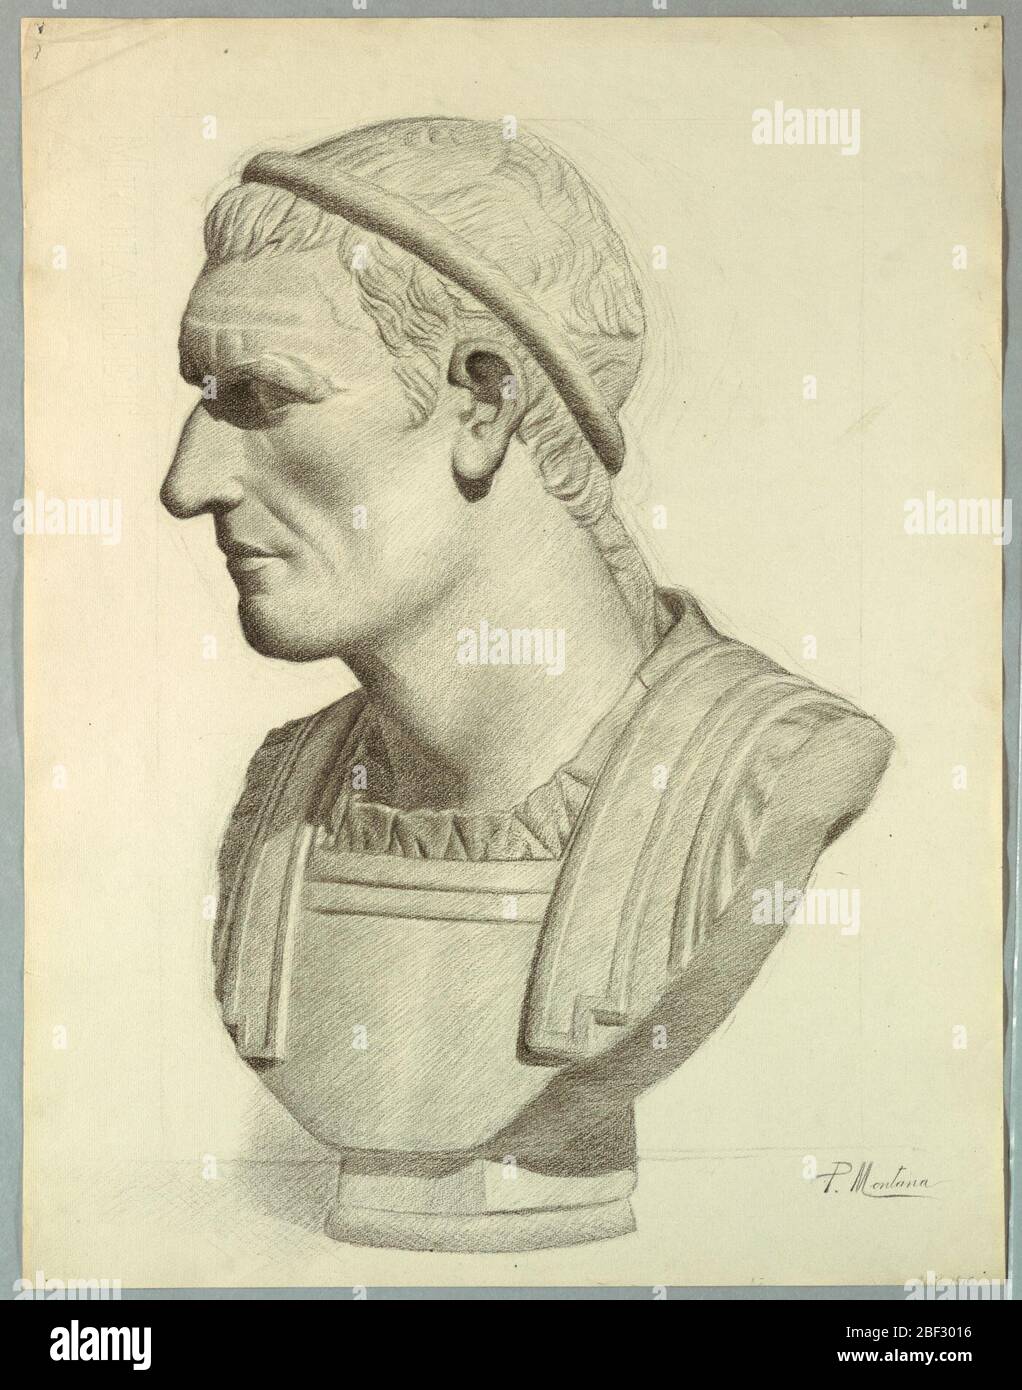 Buste d'un sénateur romain rendu à partir d'un plâtre. Rectangle vertical. Le buste est montré tourné à mi-gauche. Signé (dans charbon de bois) en bas à droite: 'P. Montana / avril 1910'. Banque D'Images